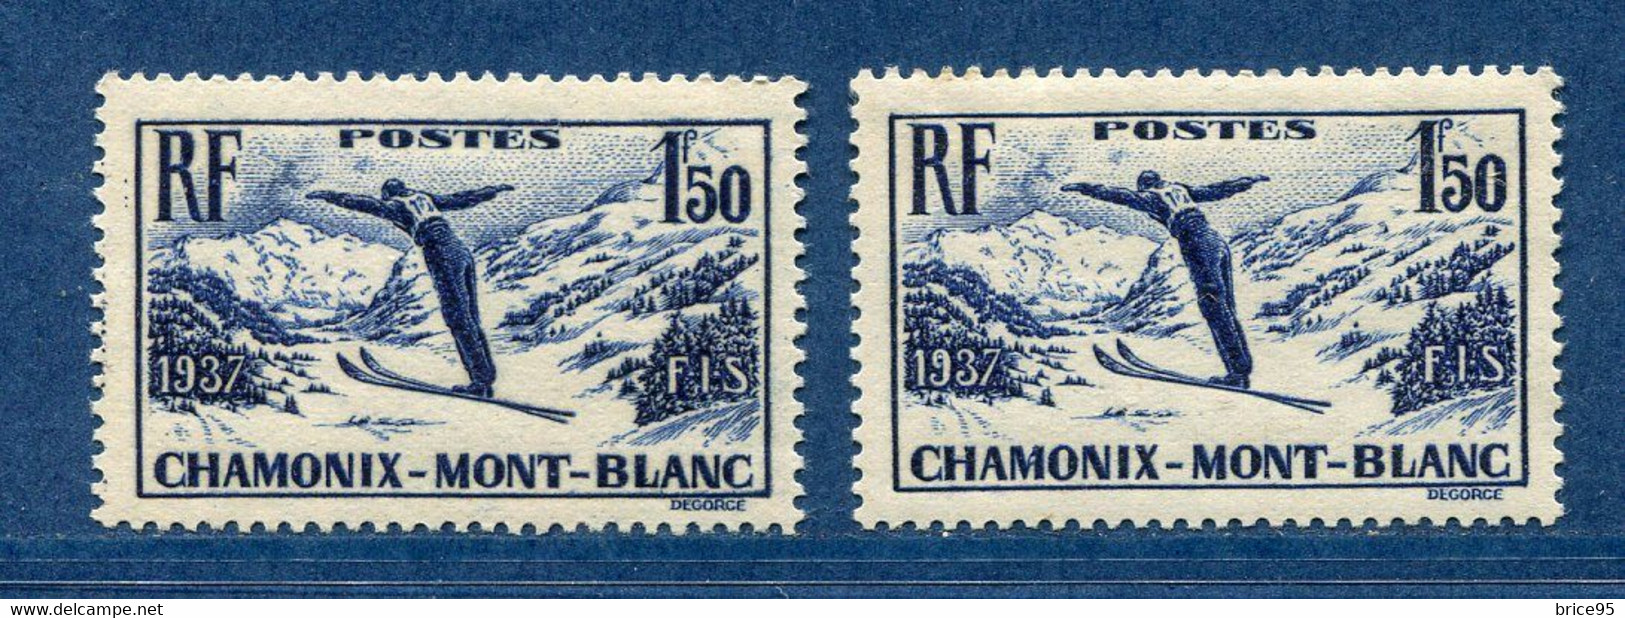 ⭐ France - Variété - YT N° 334 - Couleurs - Papier Jaunatre - Neuf Sans Charnière - 1937 ⭐ - Ungebraucht